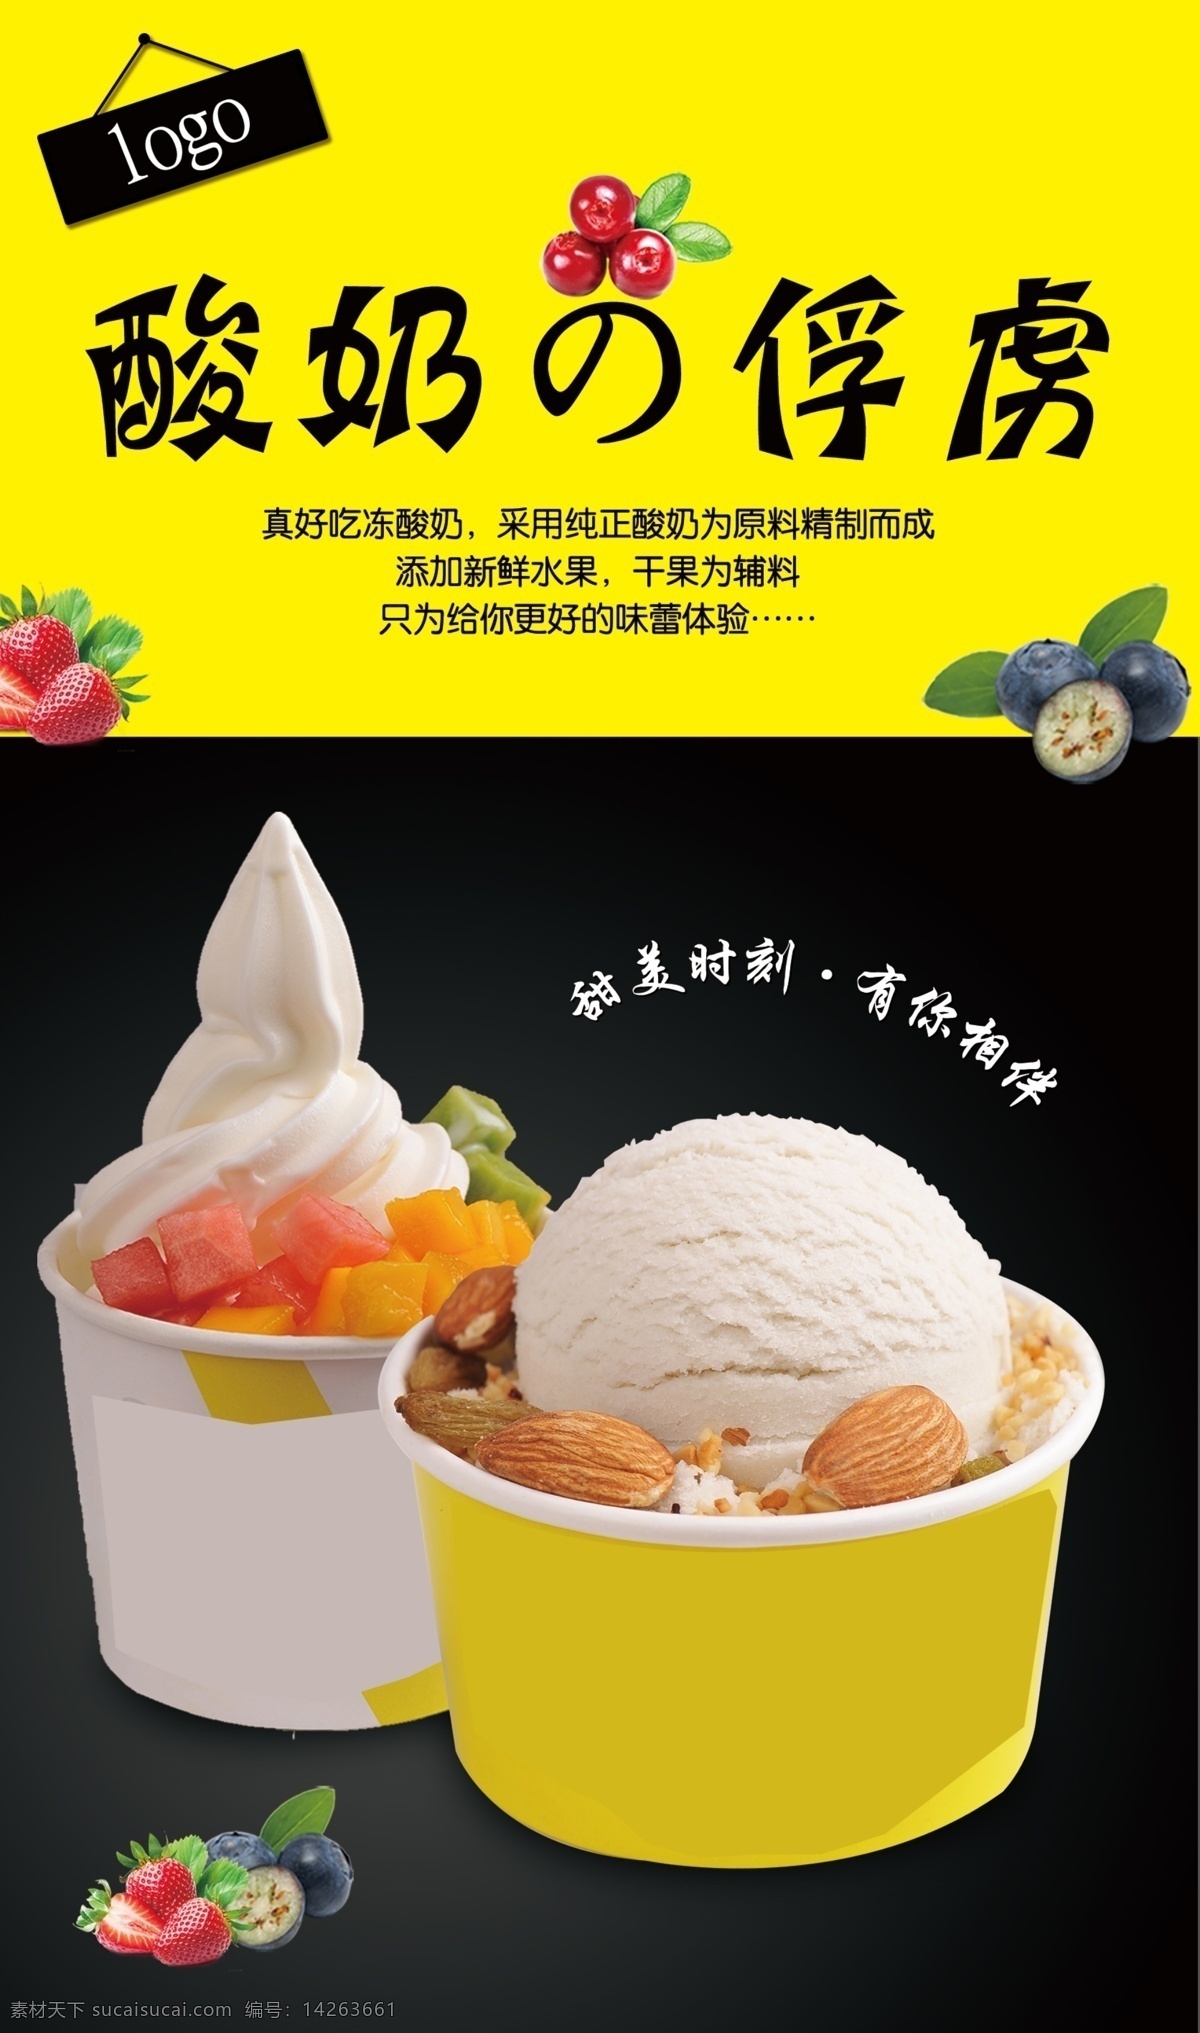 酸奶 冰淇淋 冻 海报 宣传单 软 冰 冻酸奶 草莓